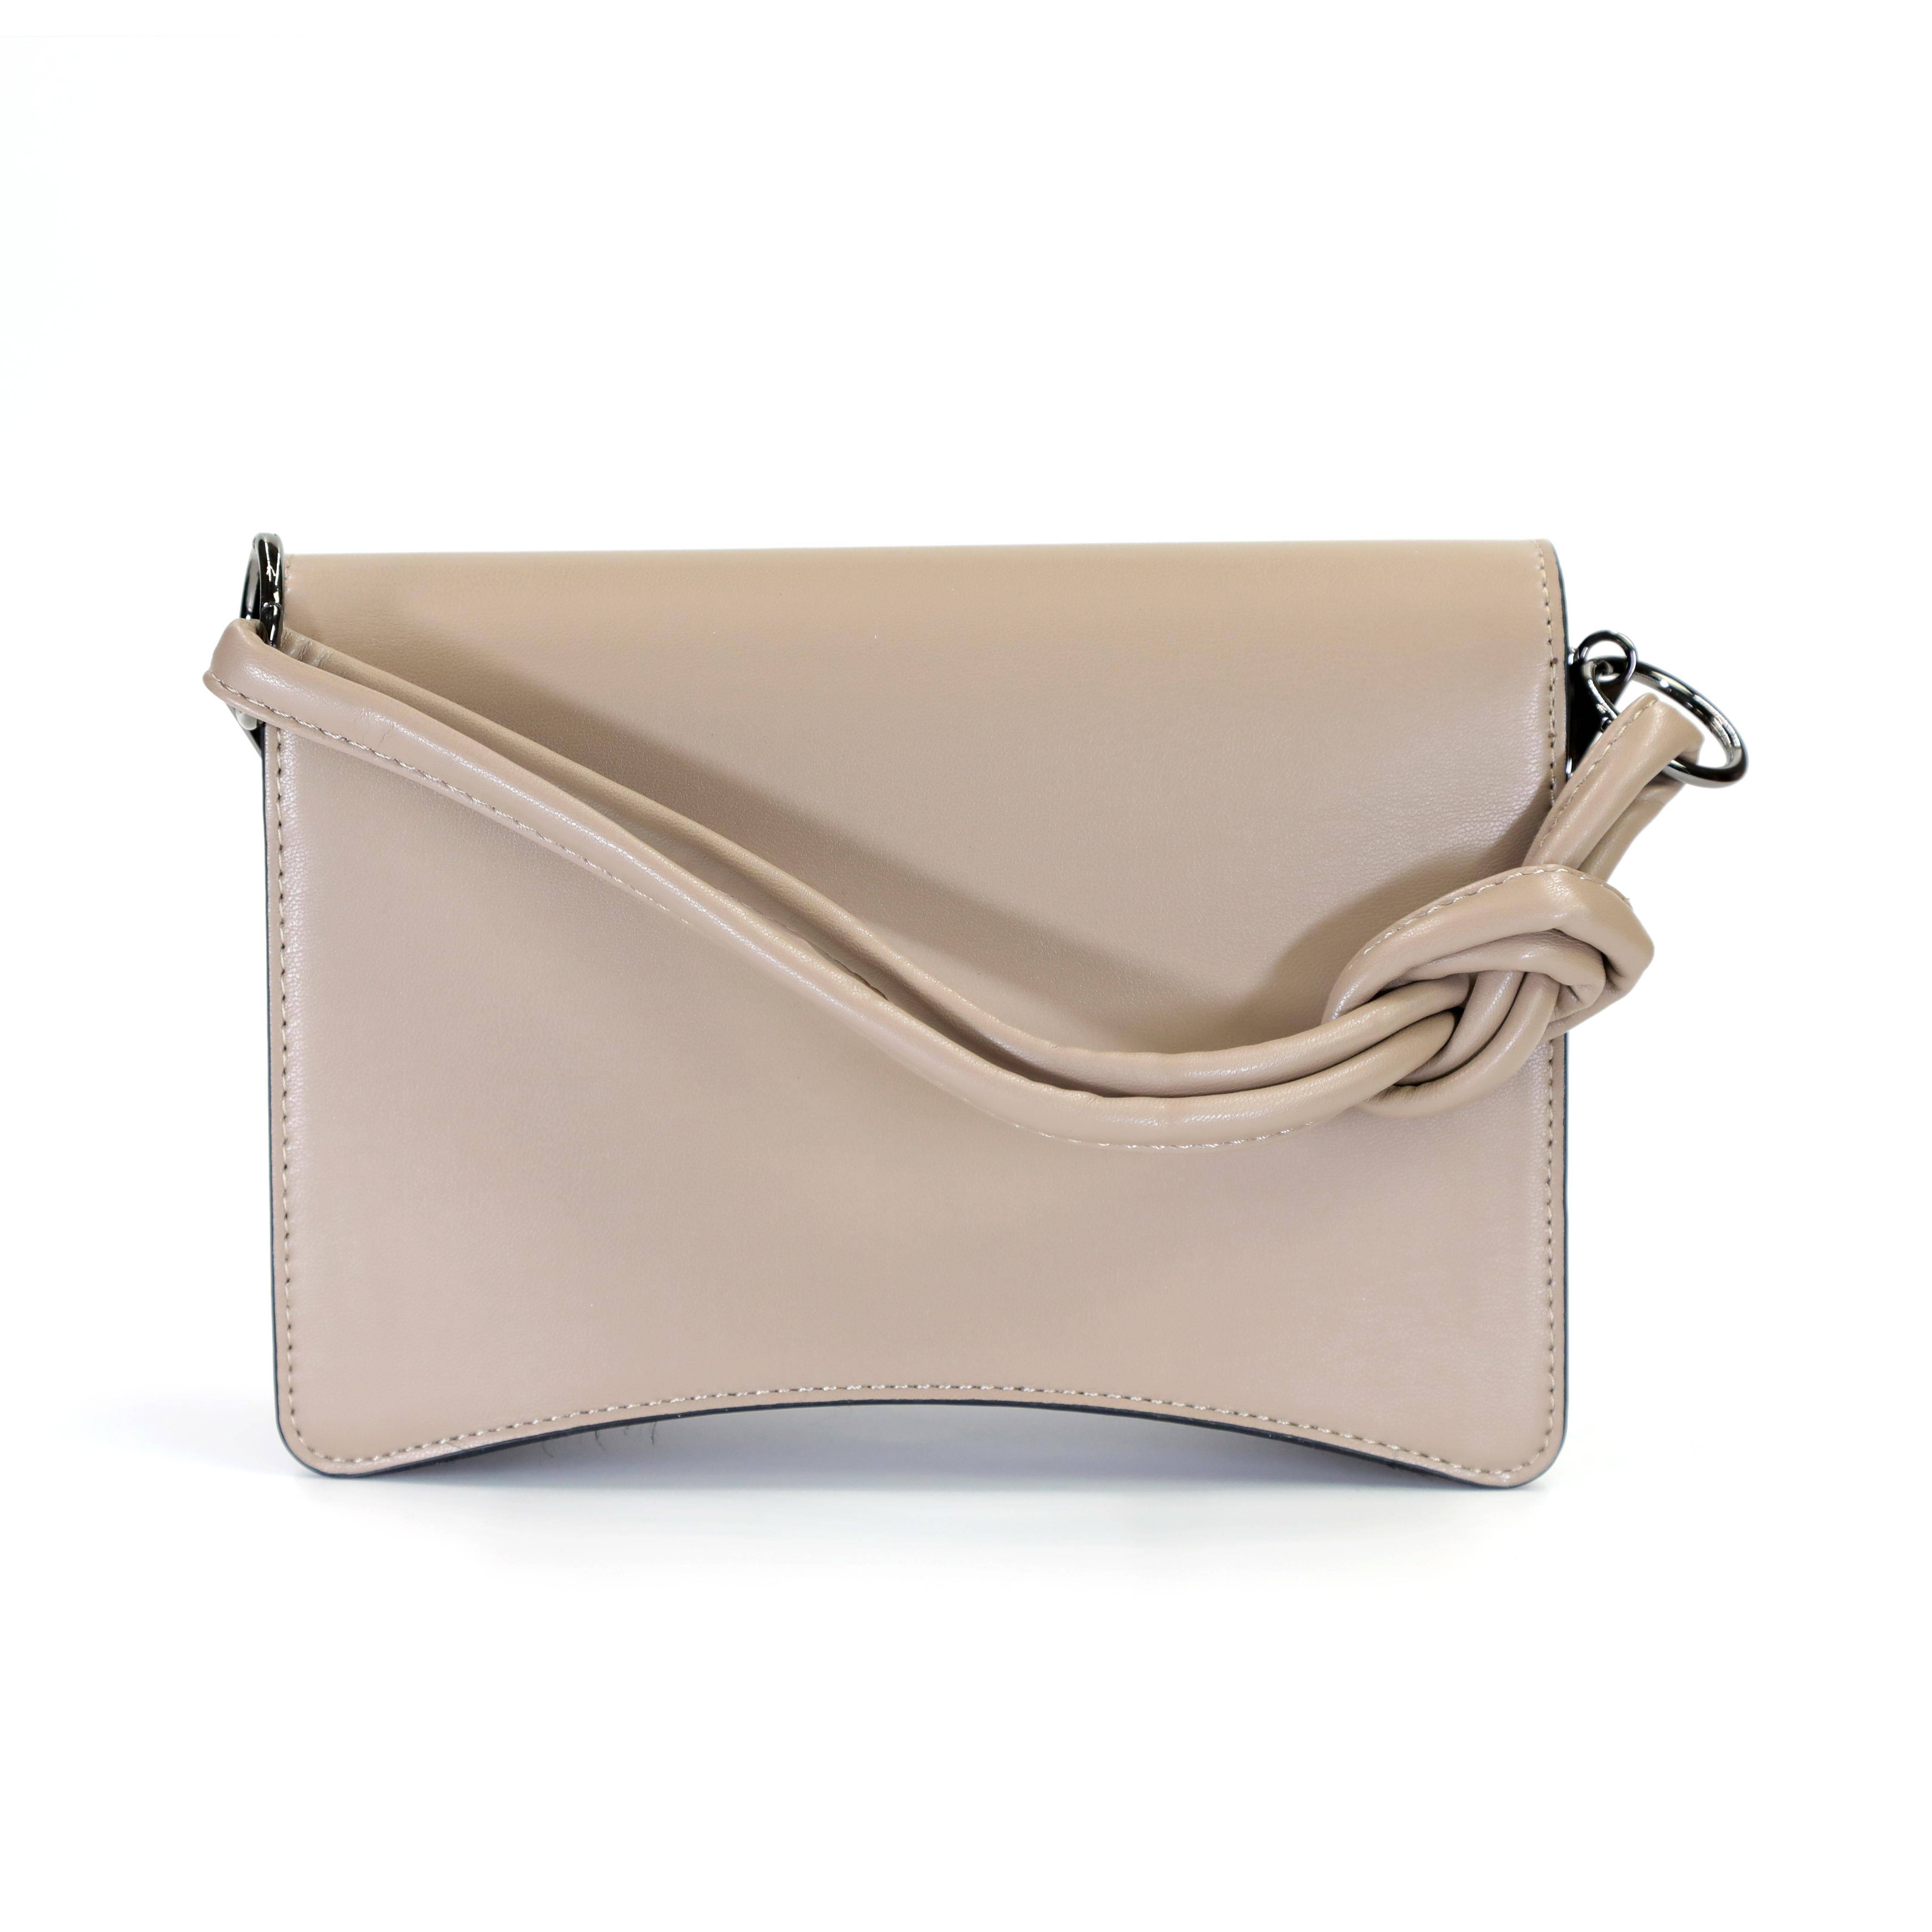 Женская сумка Blauer, бежевая, цвет бежевый, размер ONE SIZE - фото 3